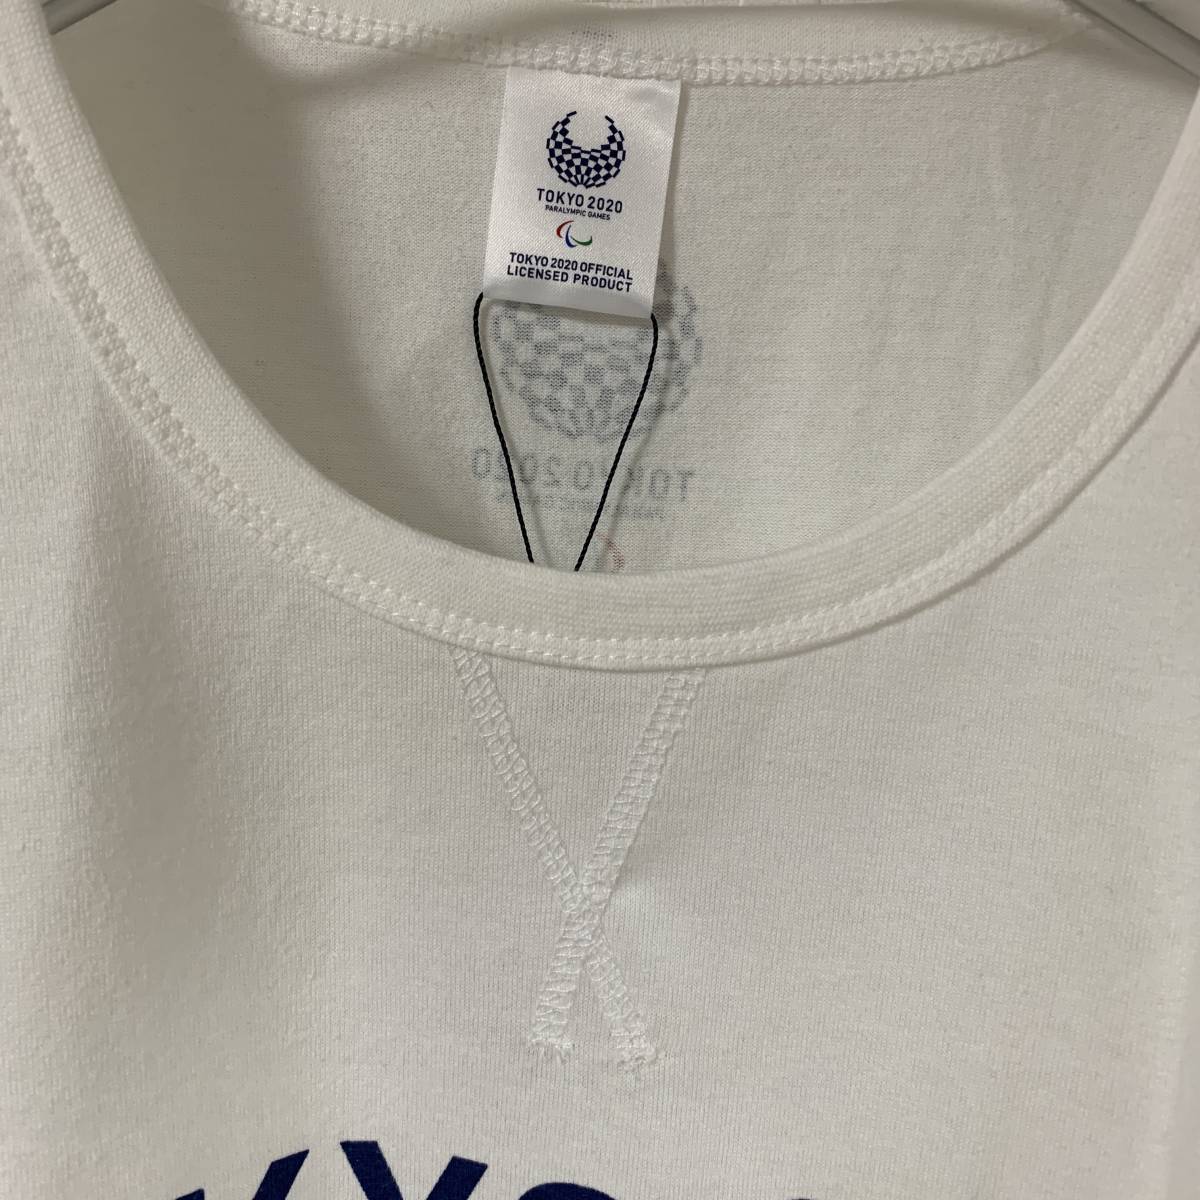 東京2020 東京オリンピック パラリンピック - TOKYP2020 公式ロゴTシャツ LLサイズ 公式ライセンス商品 販売終了 (タグ付き新品未着用)_画像3